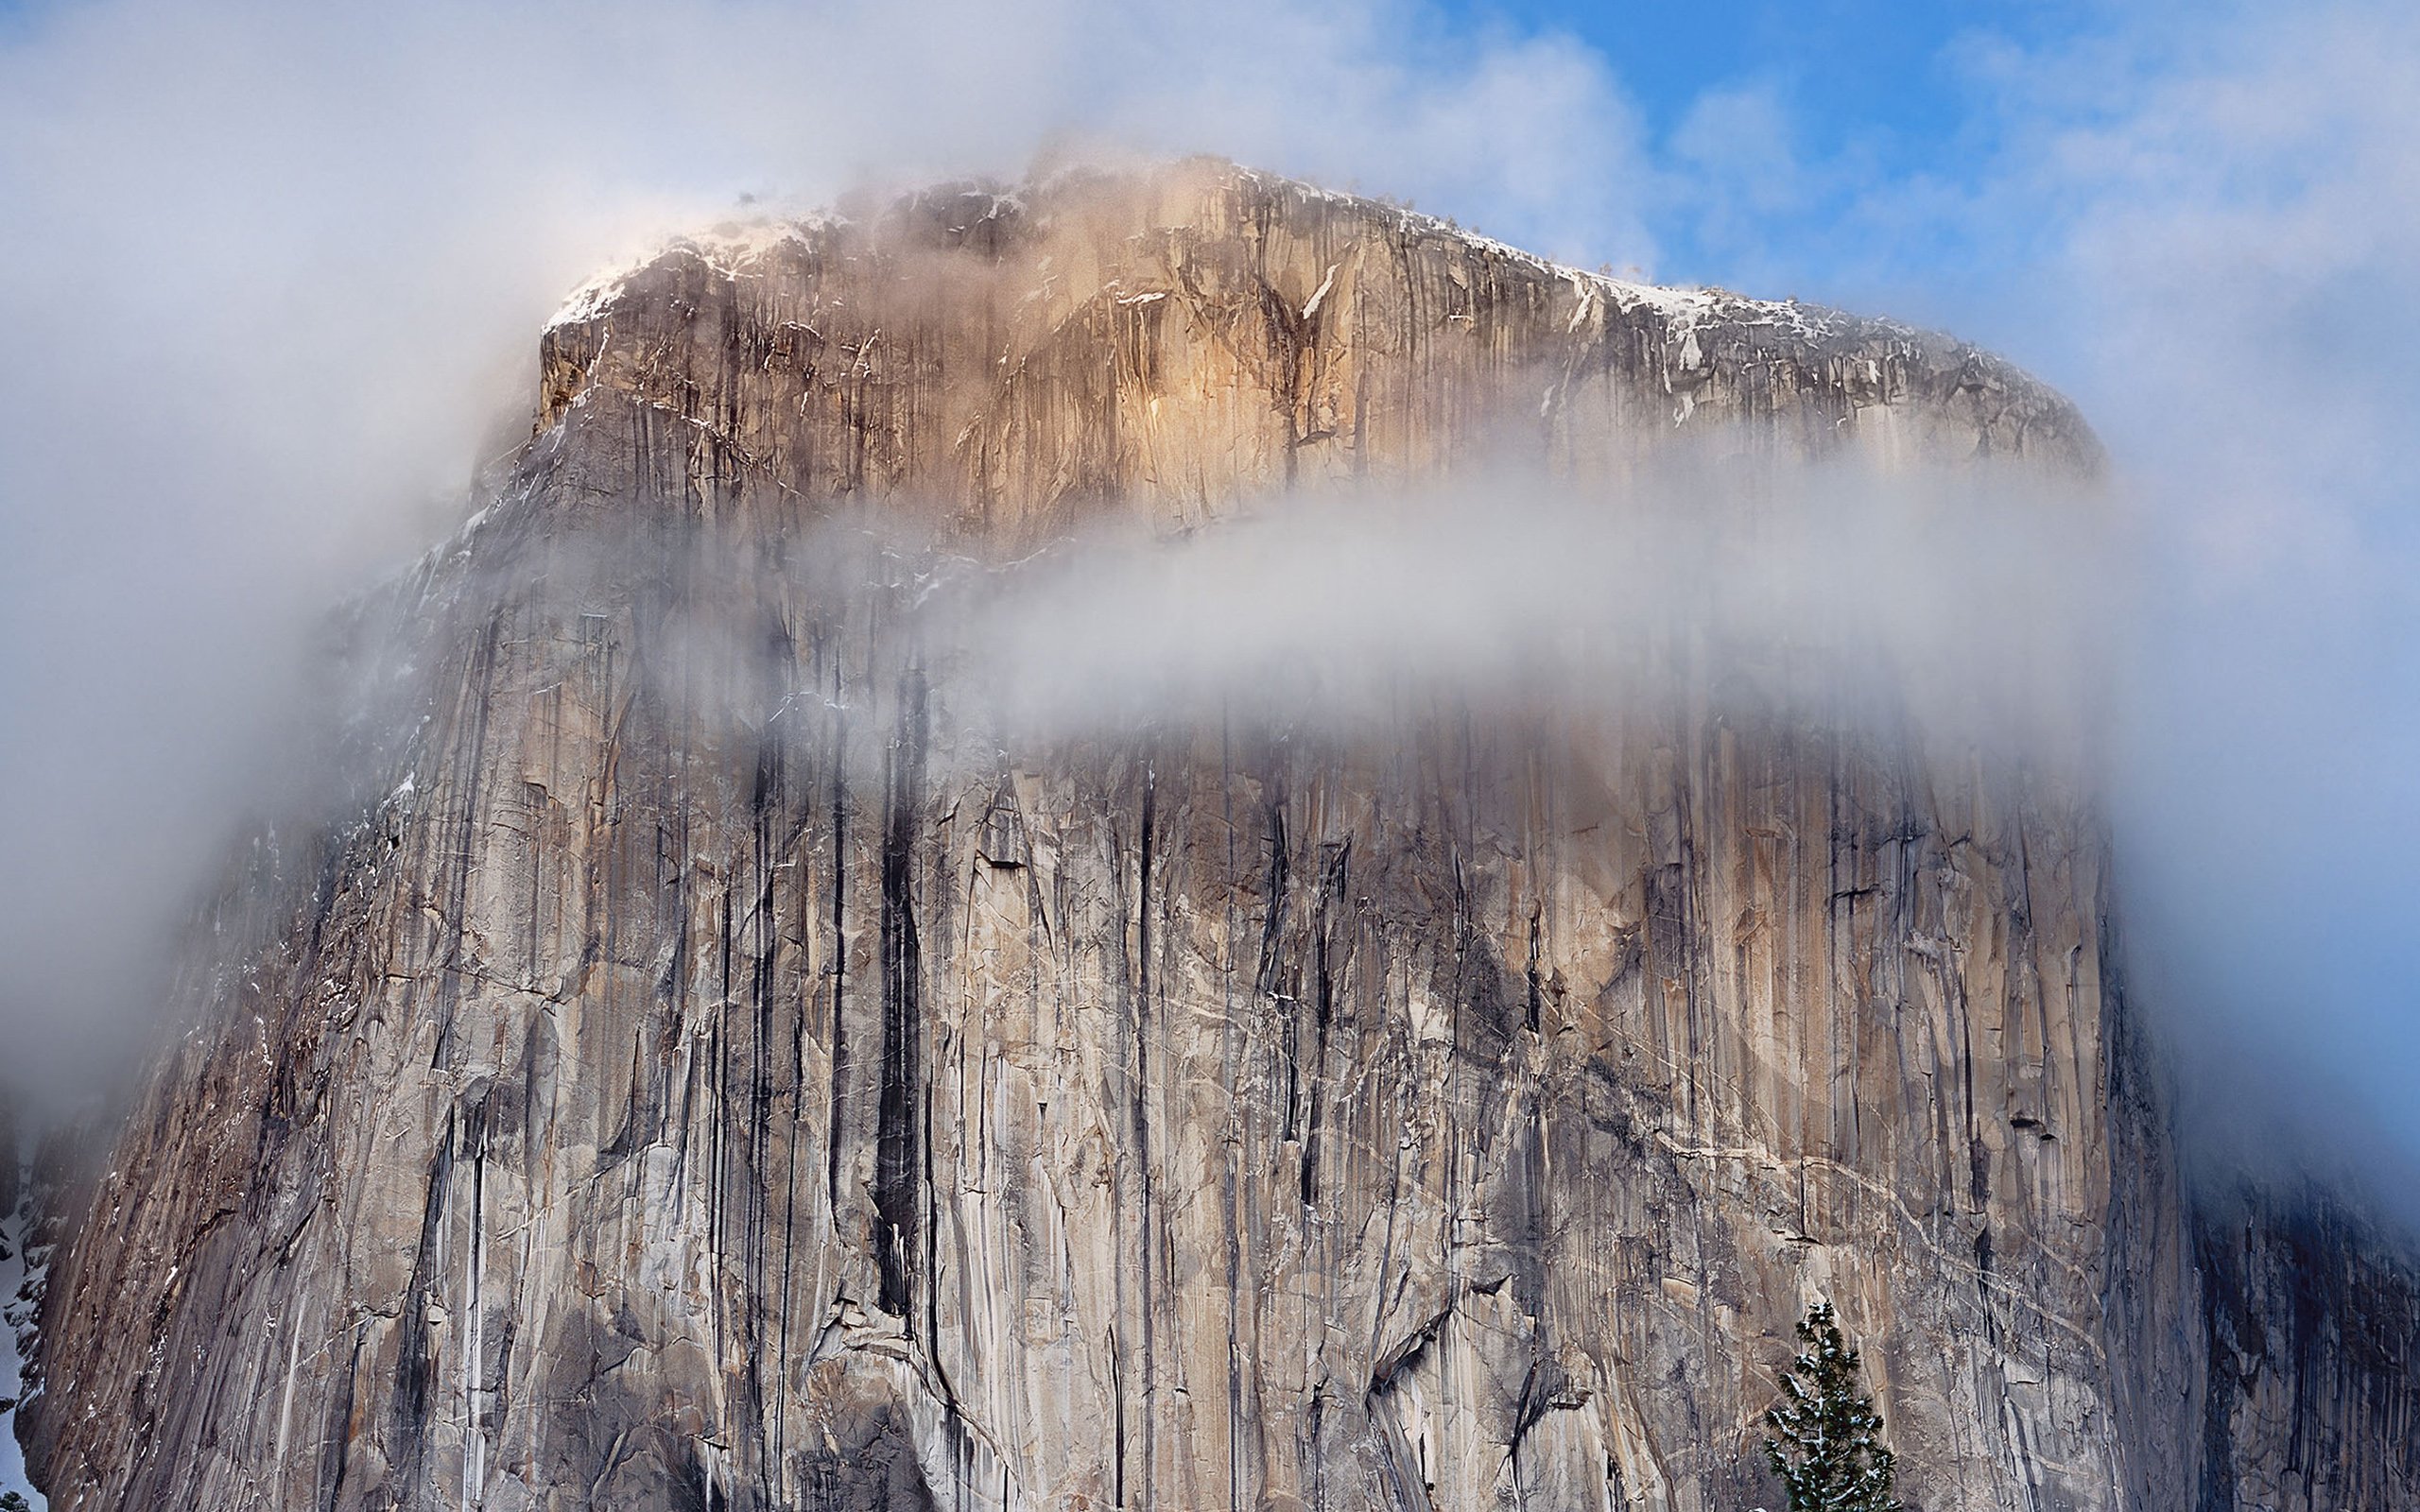 Download Safari For Mac Os X Yosemite